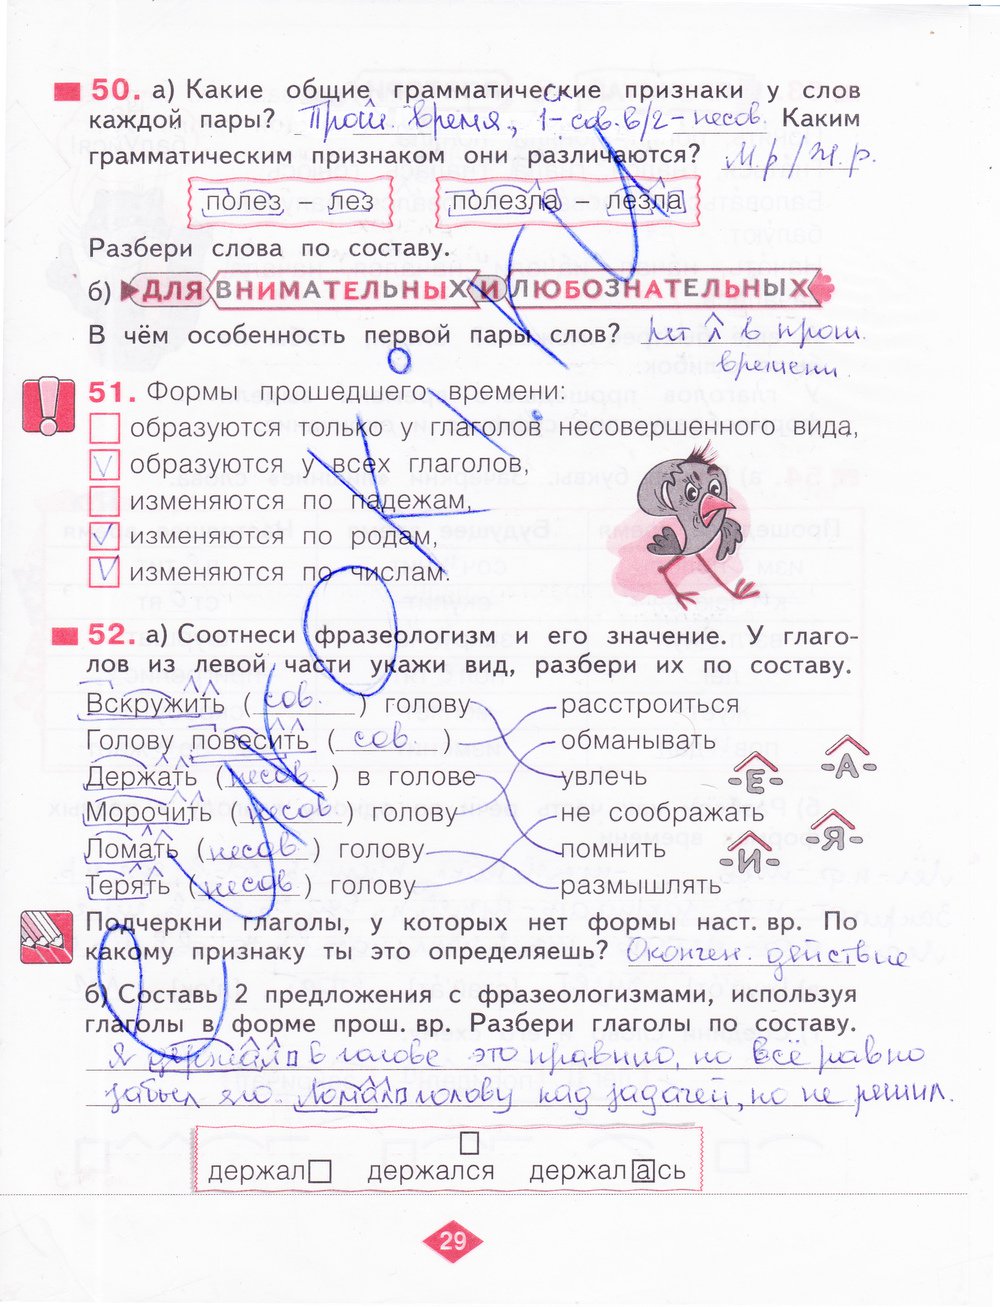 гдз 4 класс рабочая тетрадь часть 2 страница 29 русский язык Нечаева, Воскресенская